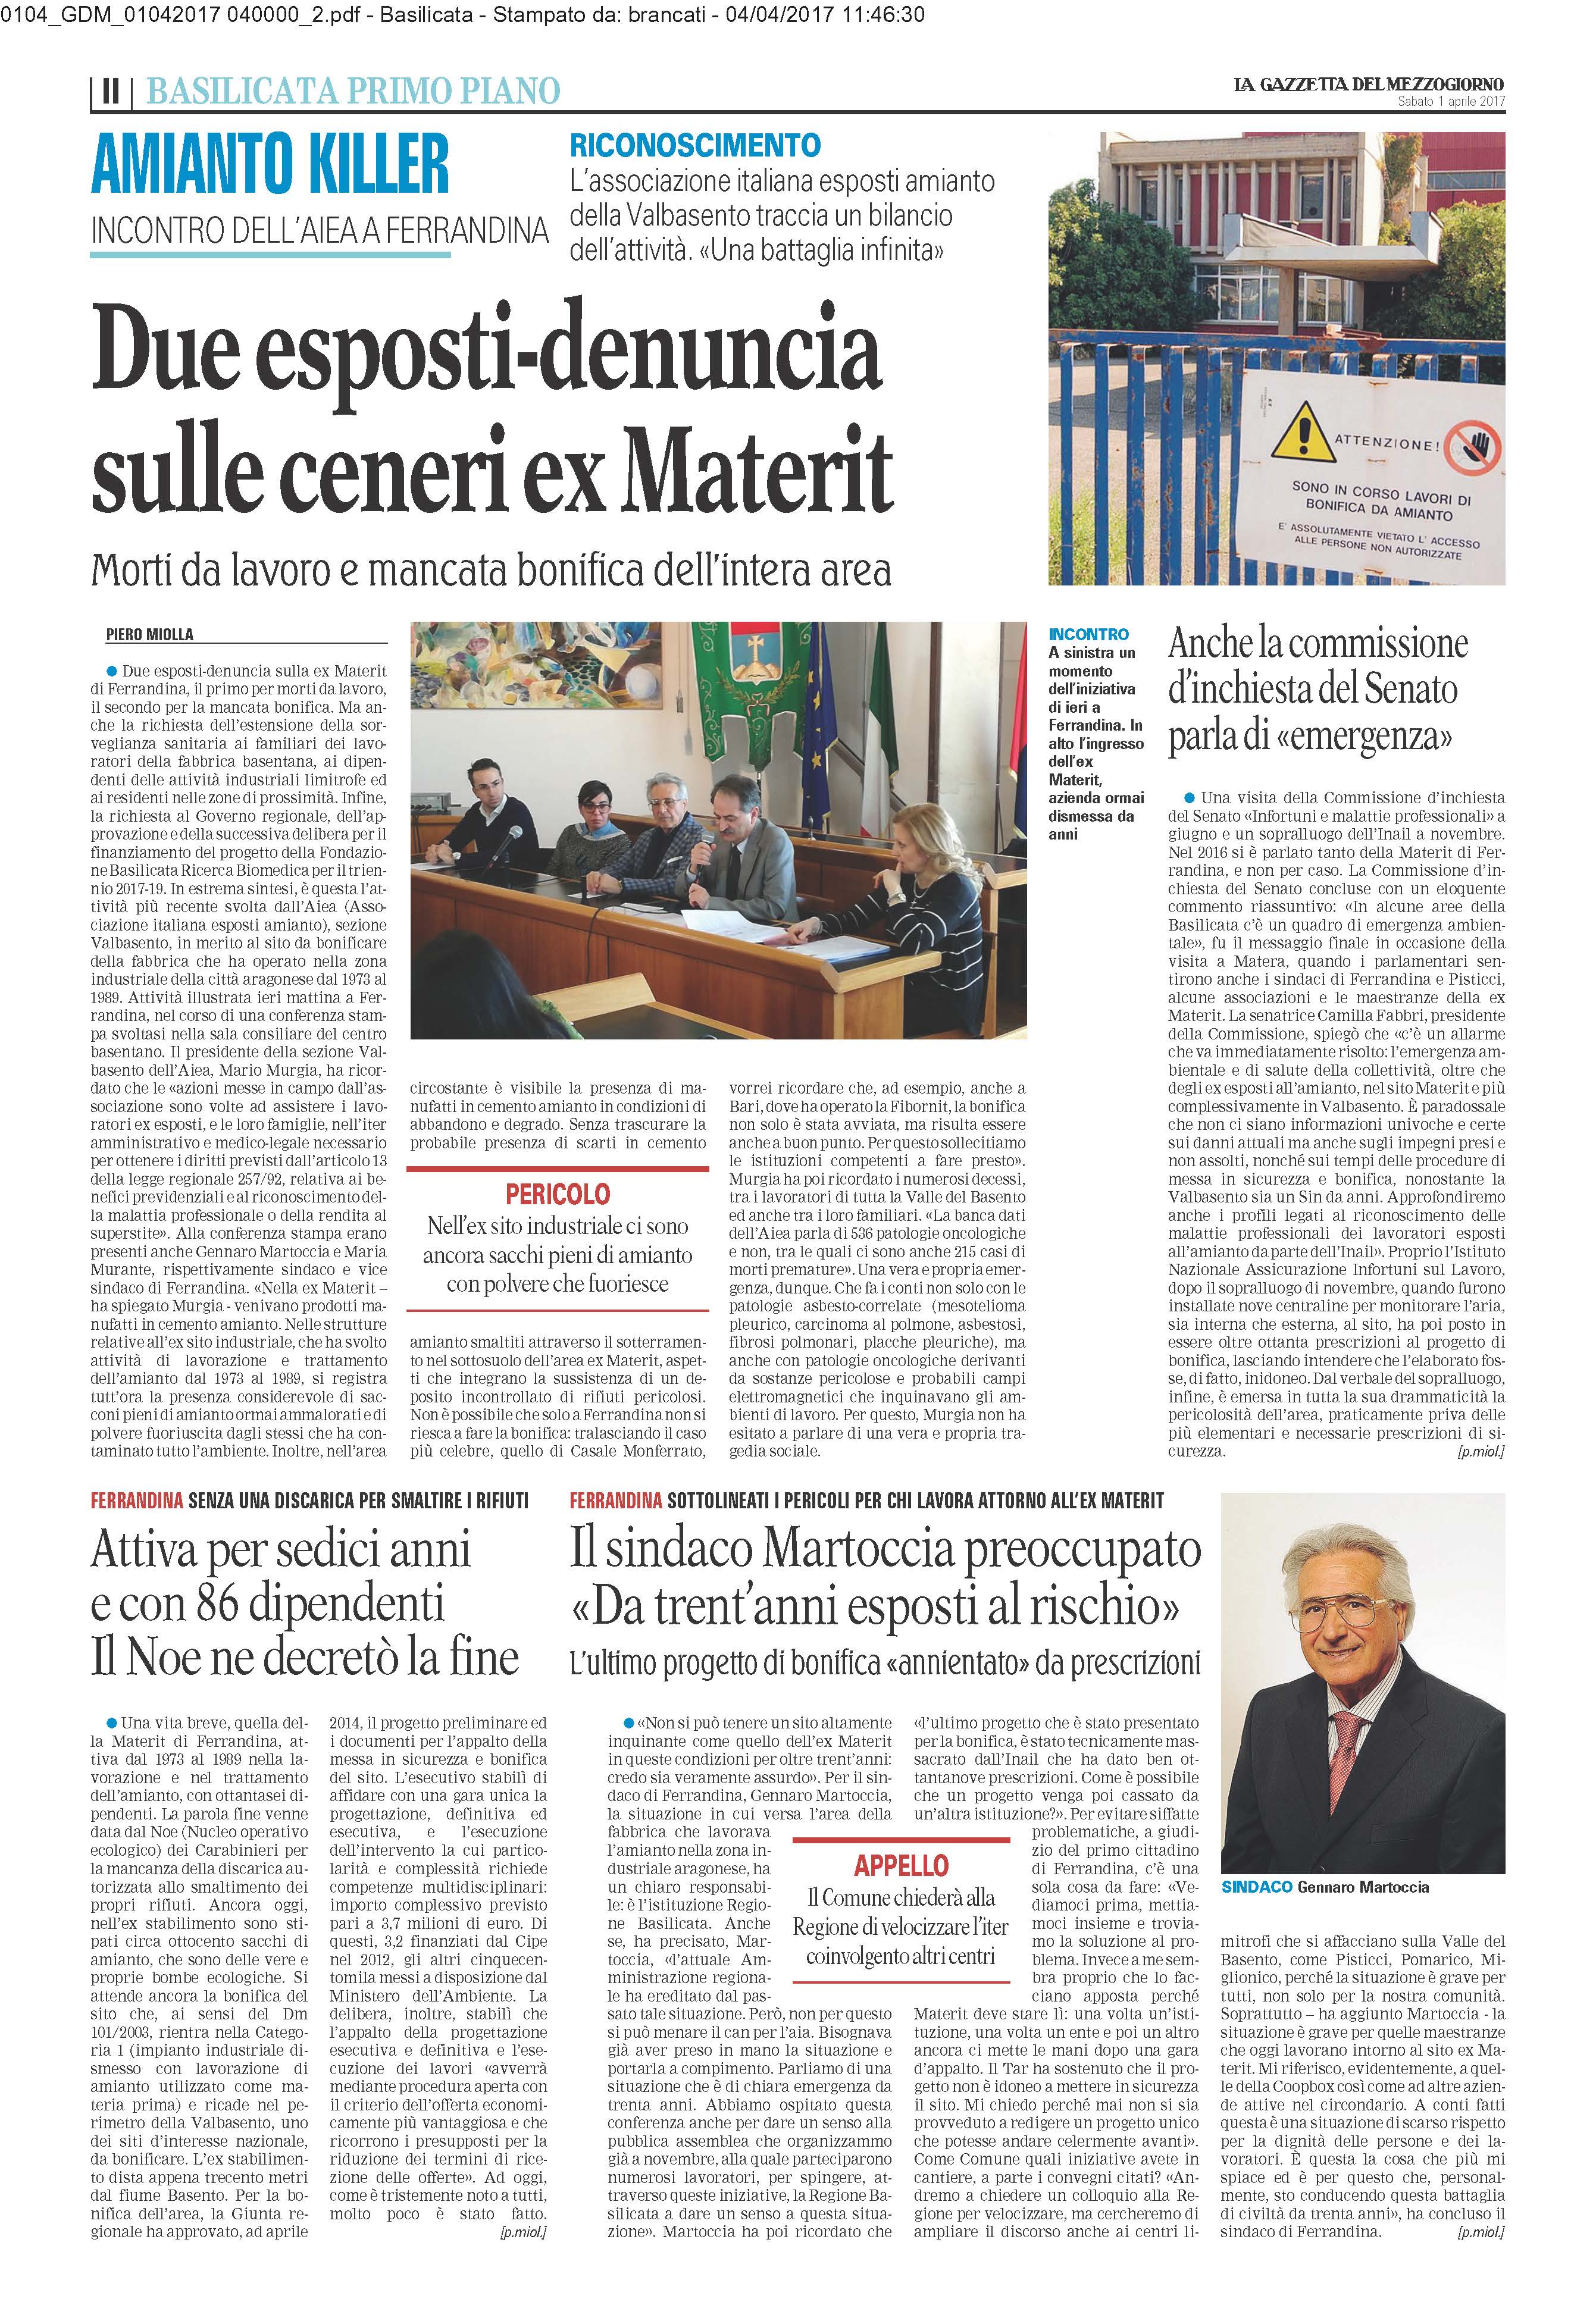 Venerdì 31 marzo, nella sala Consiliare del Comune di Ferrandina, l'Associazione esposti amianto Val Basento ha incontrato la stampa per un focus dettagliato sulla vertenza amianto in Basilicata.